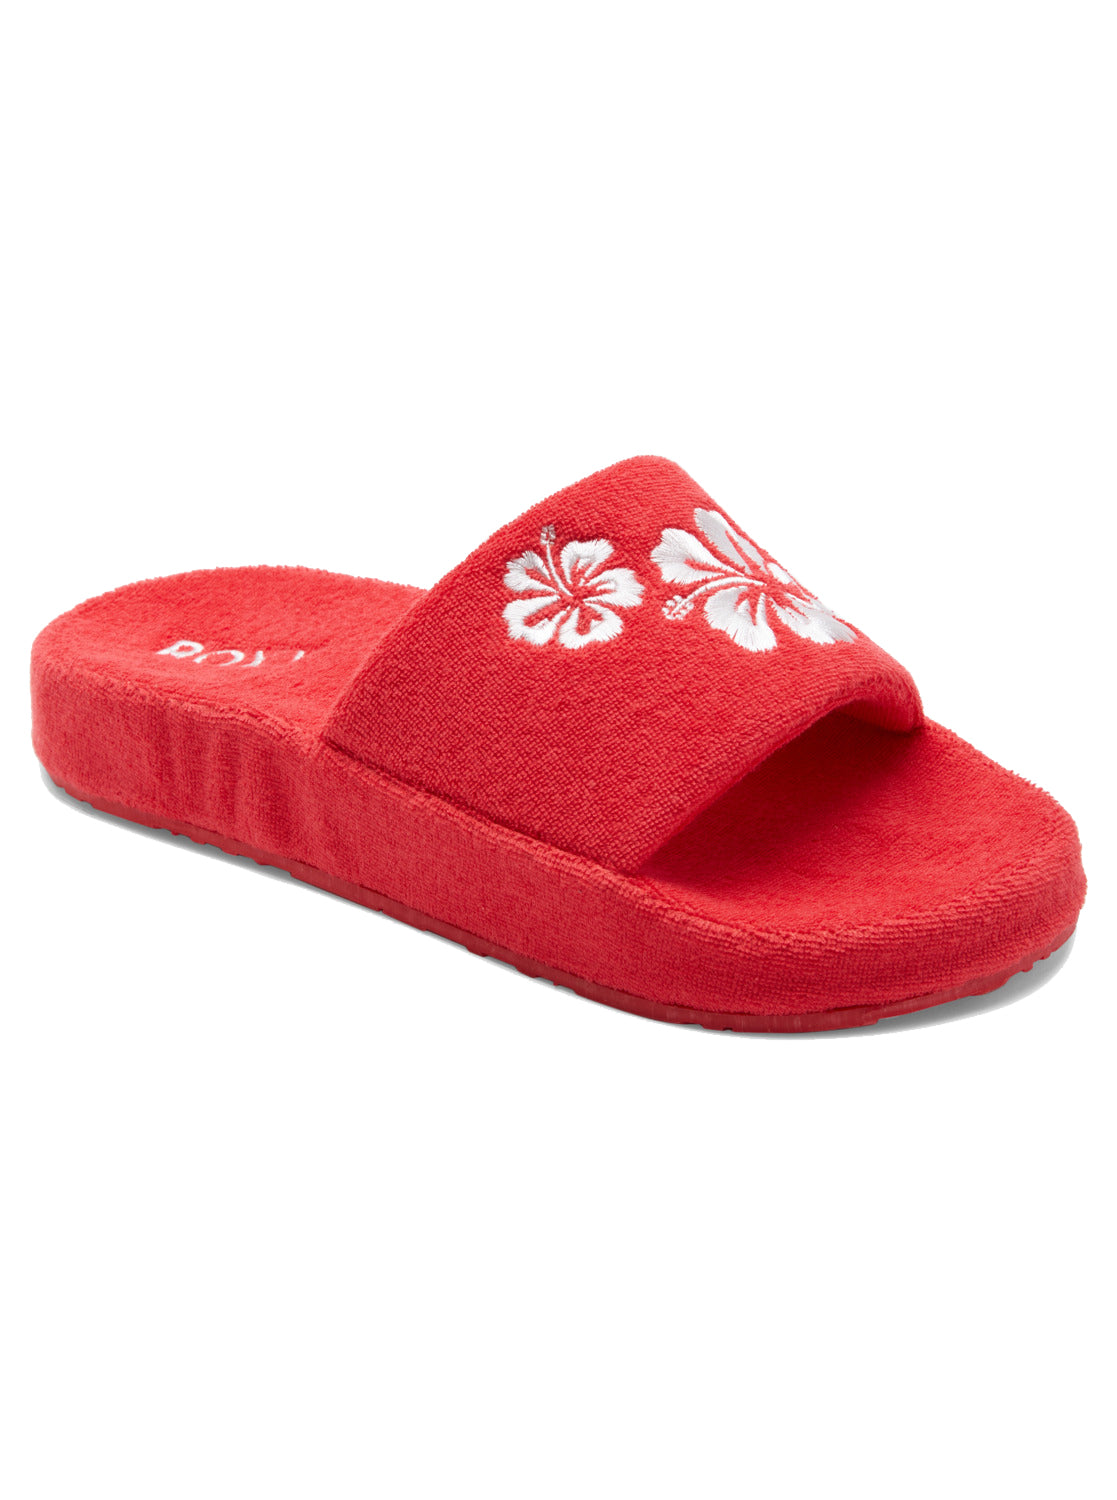 Roxy Slippy Sandals RED 9